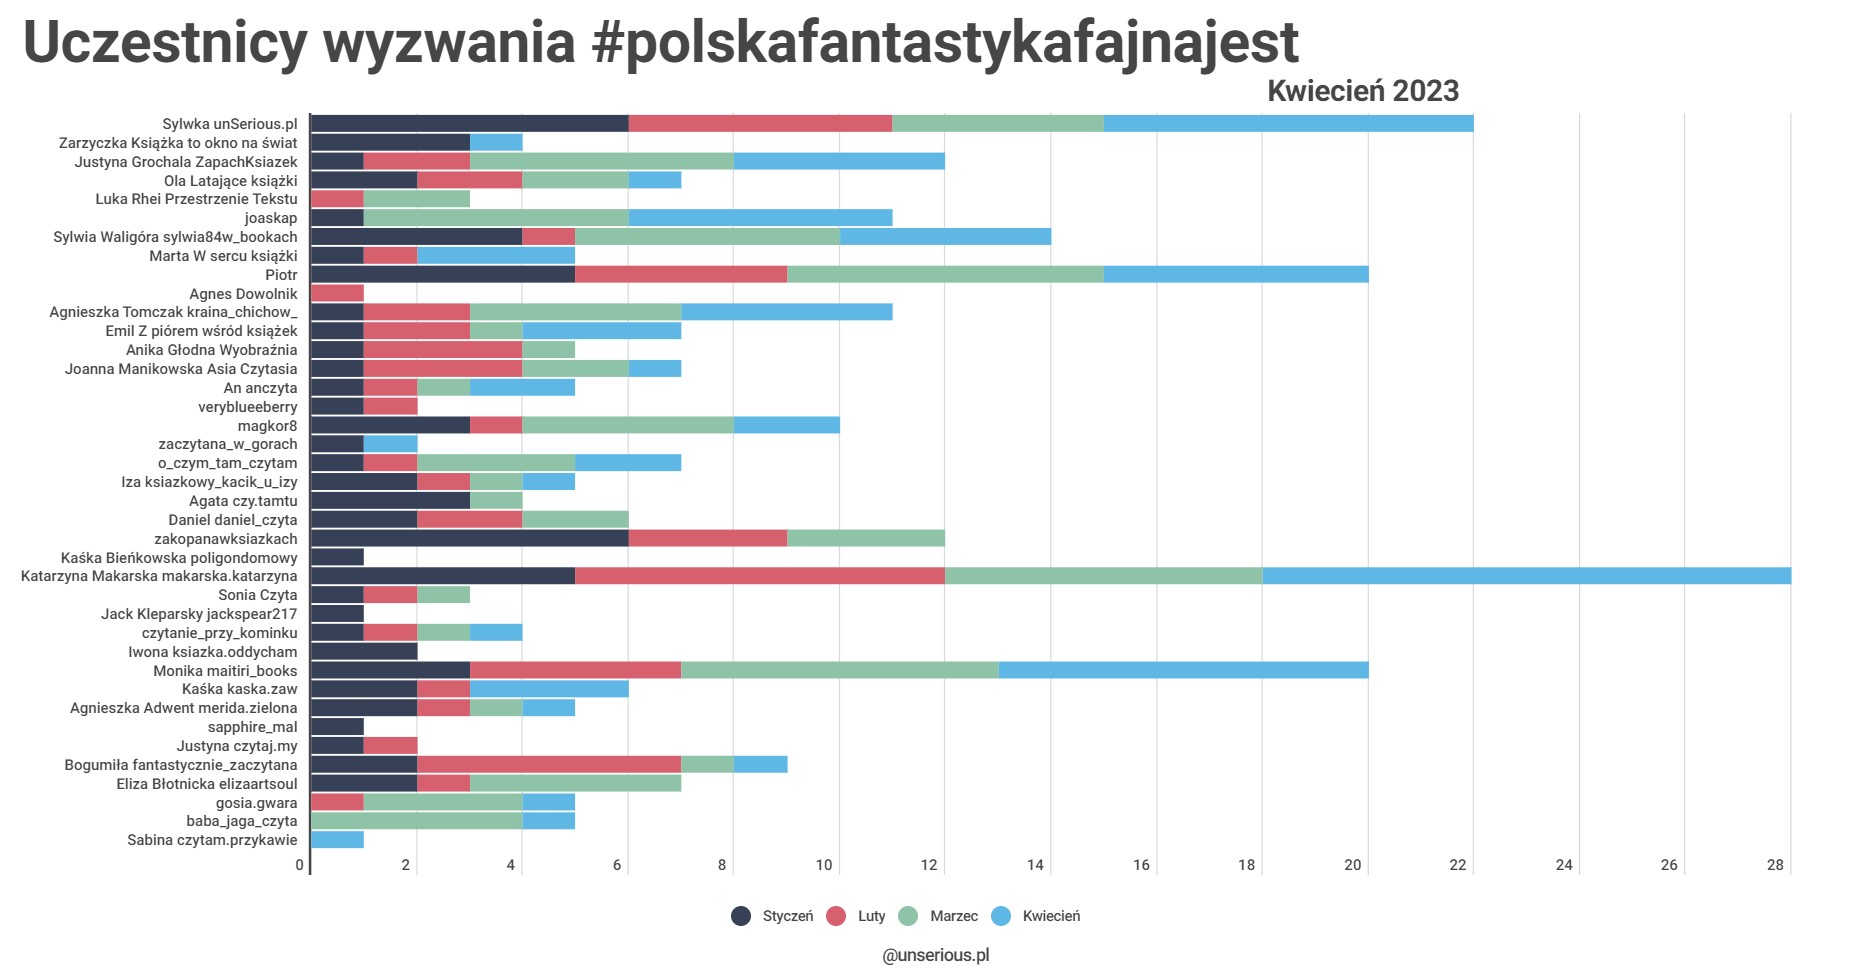 Kwiecień 2023 z wyzwaniem #polskafantastykafajnajest